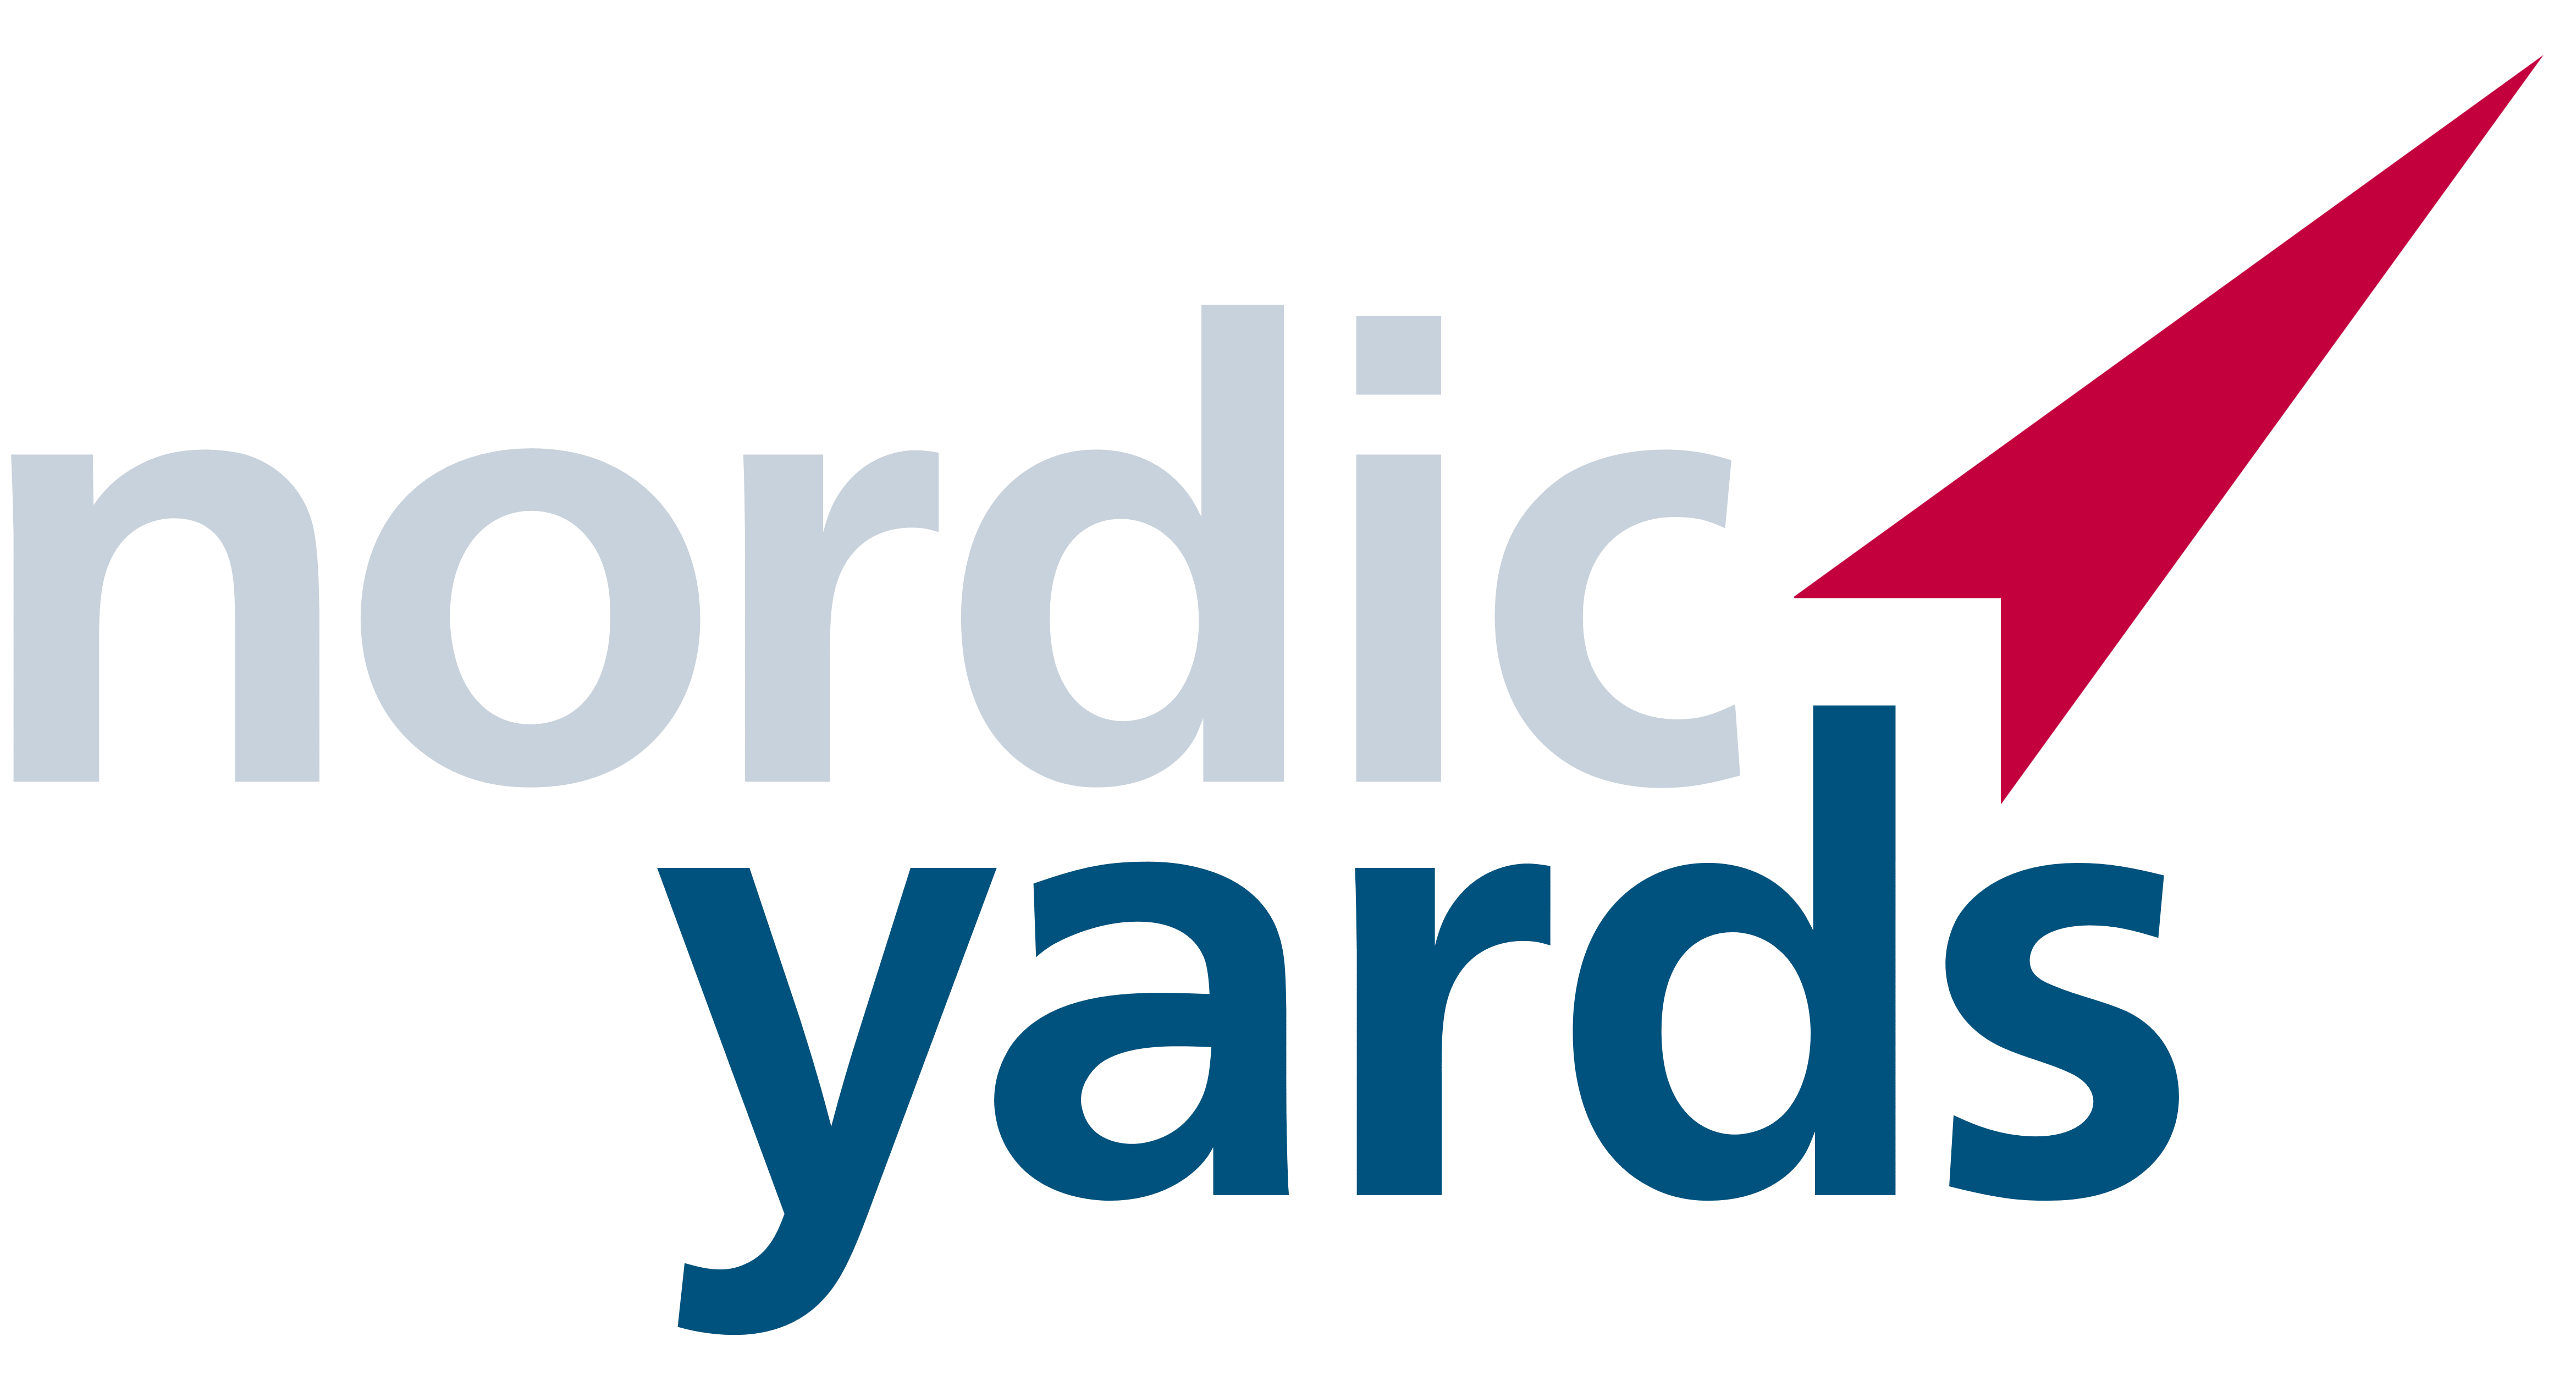 Nordic Yards logo, logotype